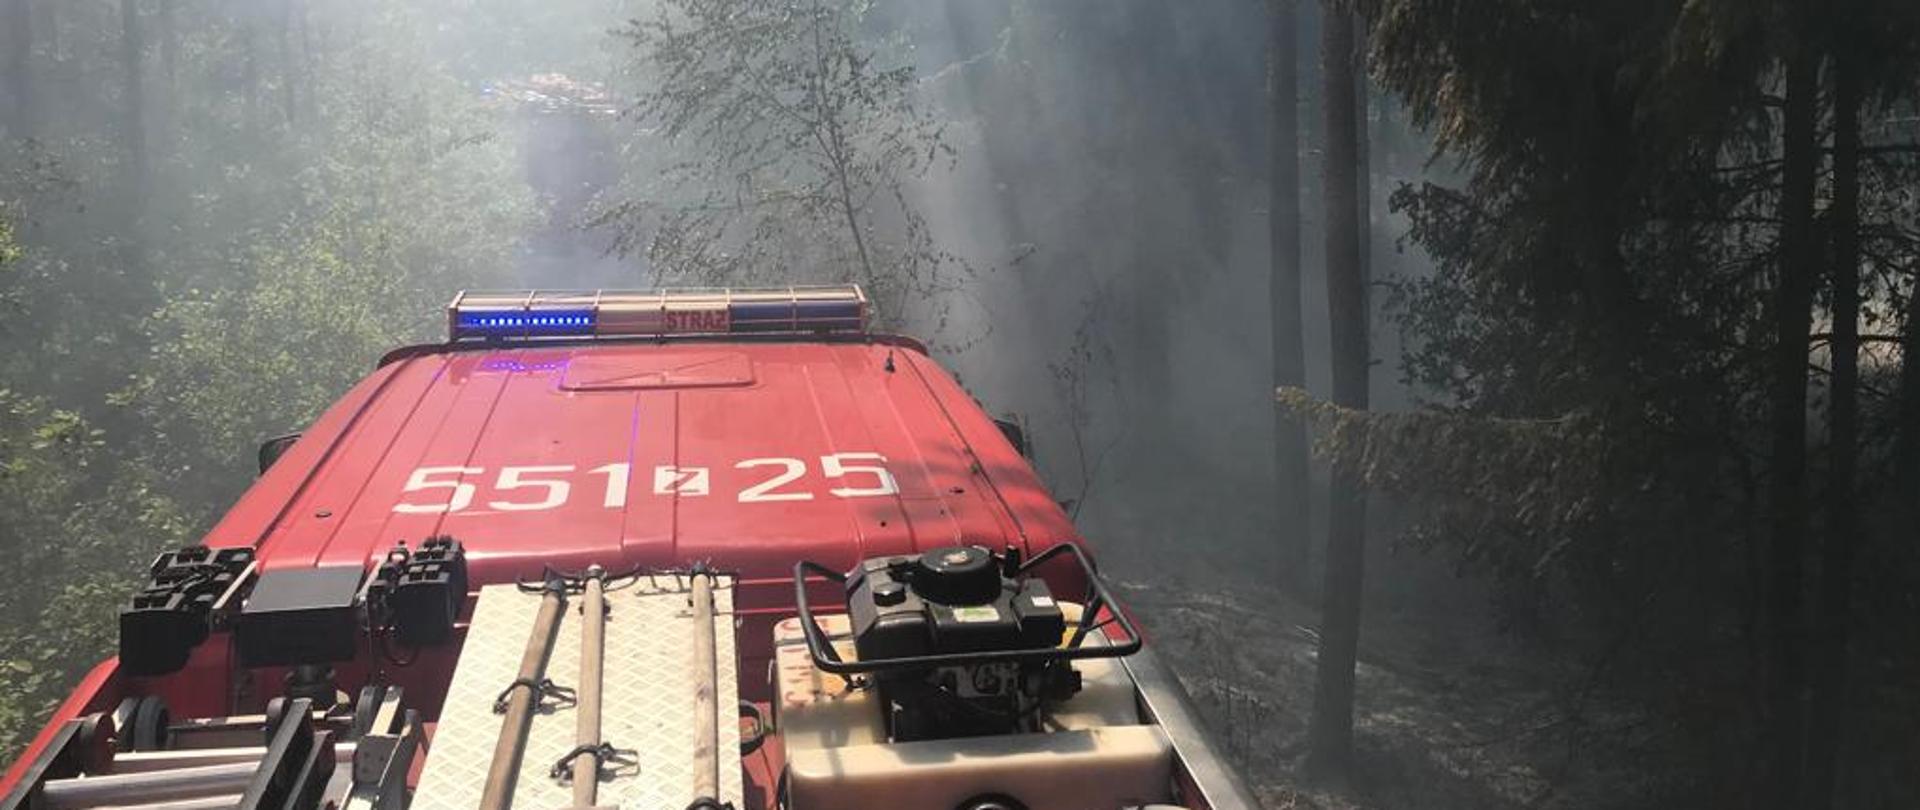 Zdjęcie przedstawia samochód strażacki podczas pożaru lasu.